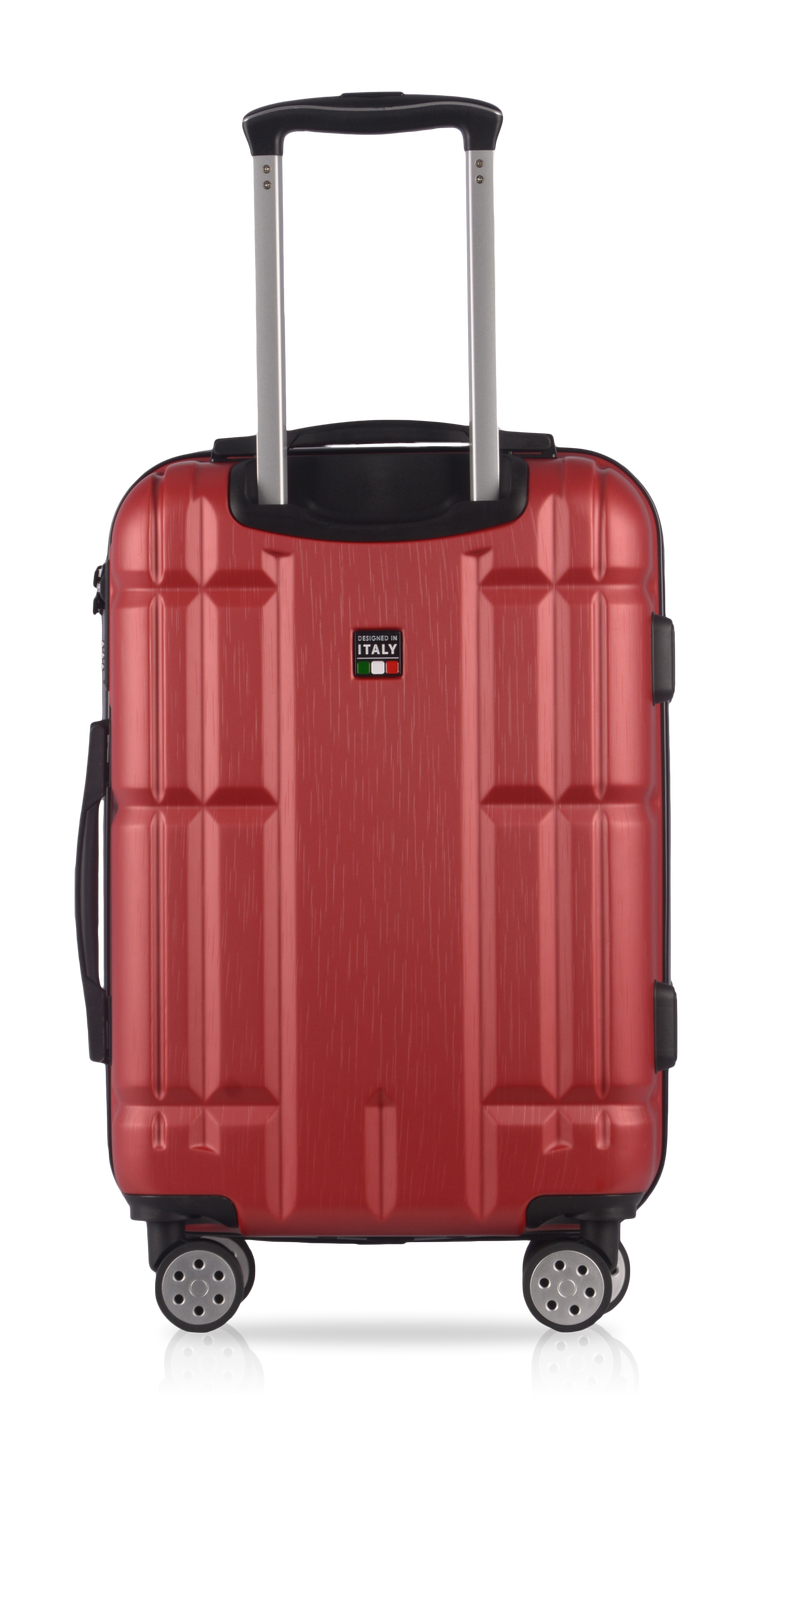 TUCCI Italy MASSA 26" Hardcase Durable Luggage Suitcase